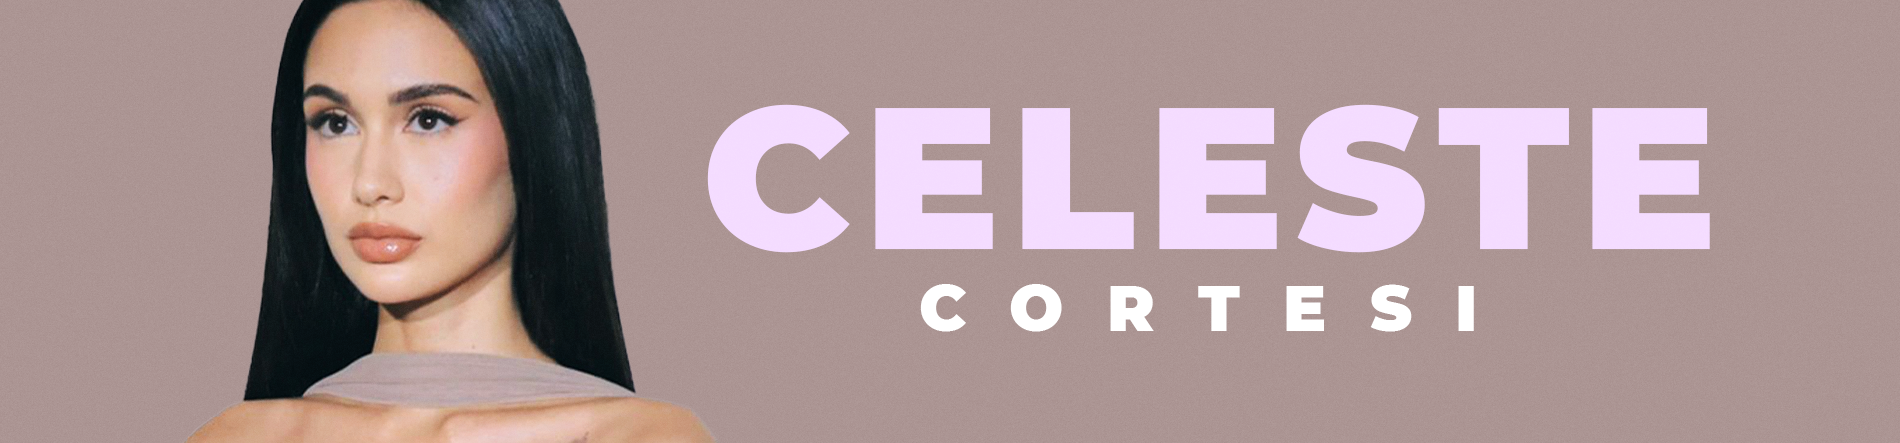 Celeste Cortesi Desktop Banner